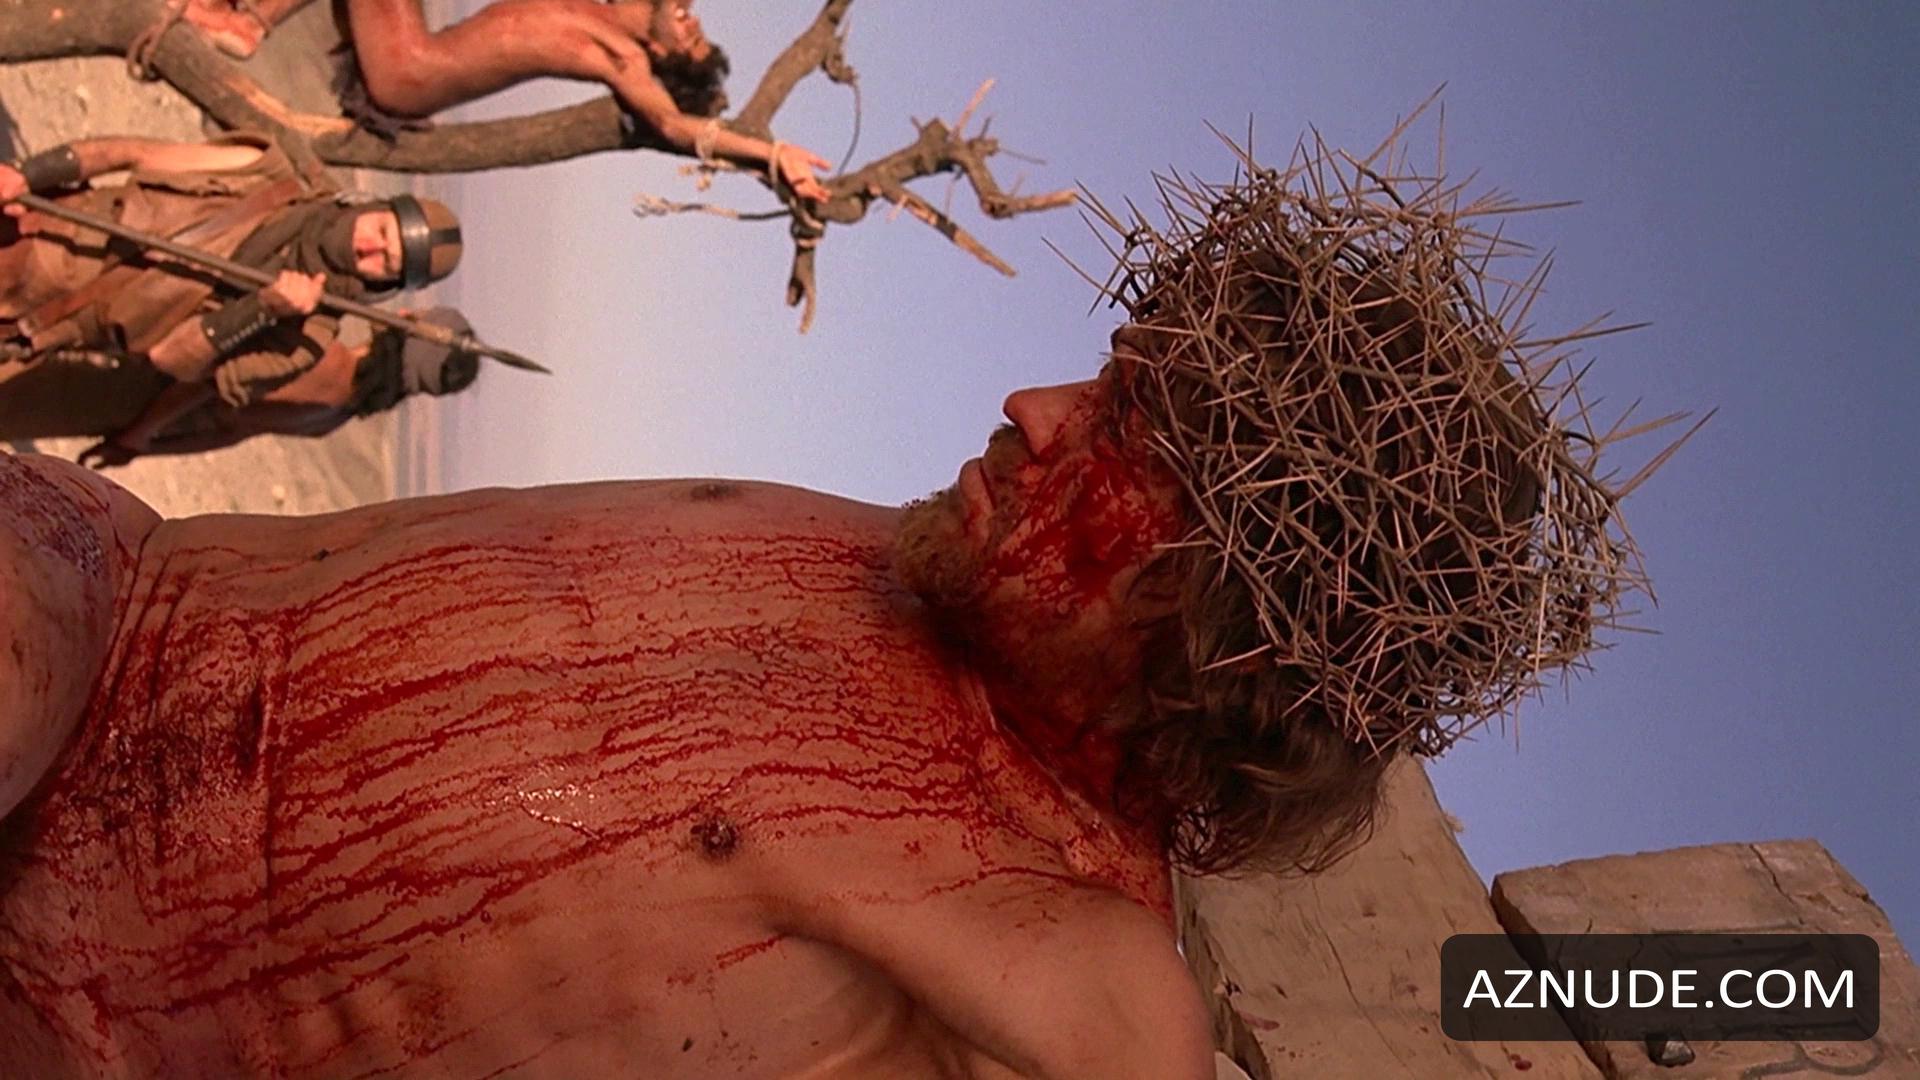 The Last Temptation Of Christ Nude Scenes Aznude Men